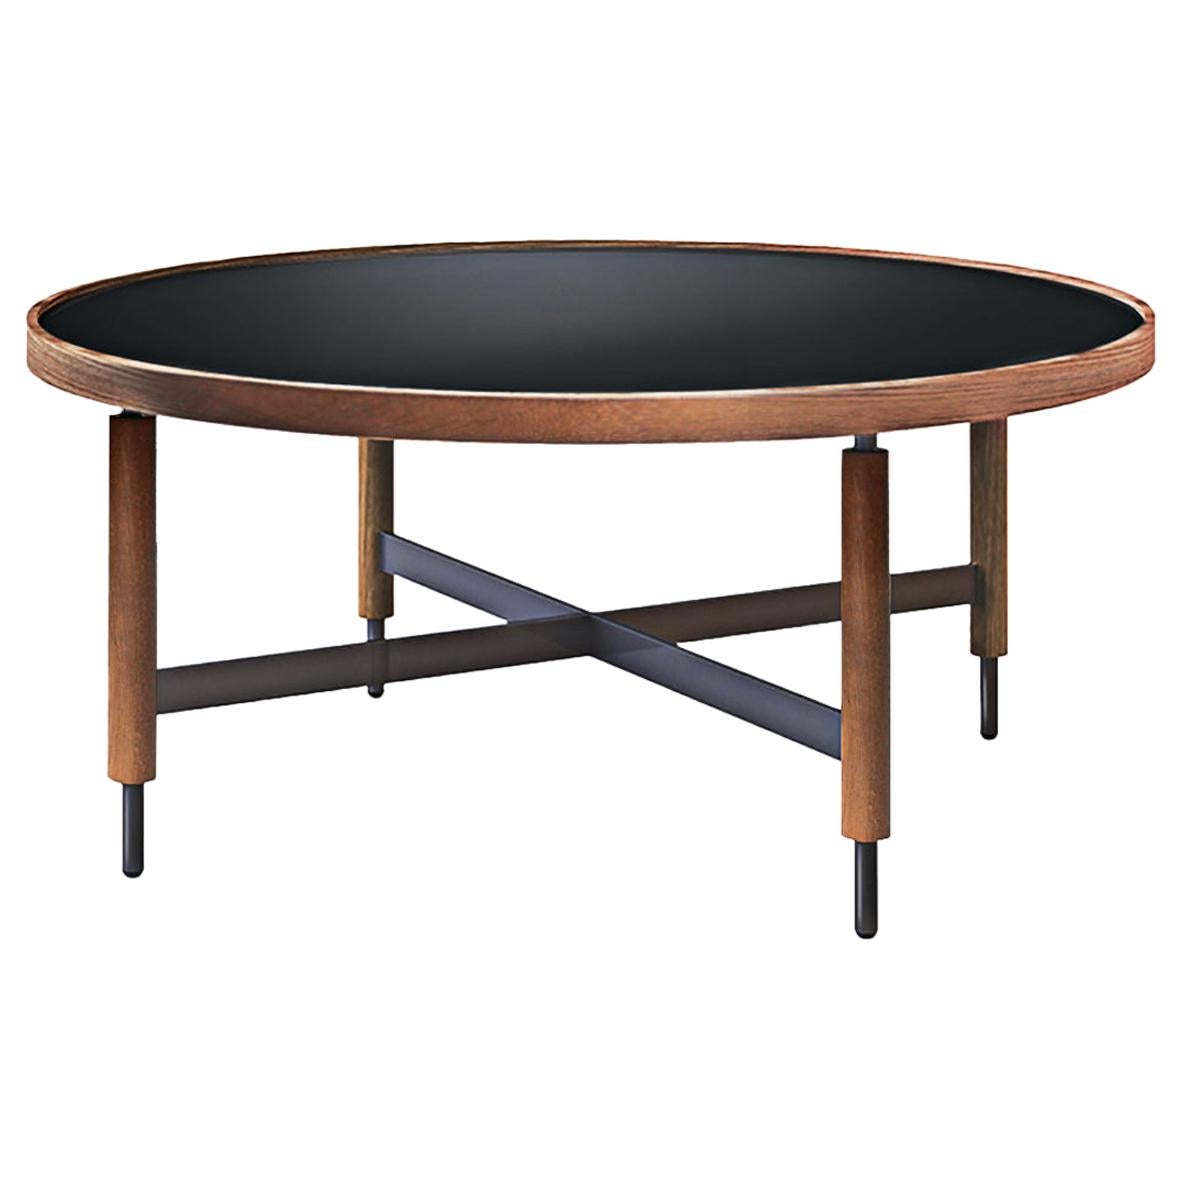 Table centrale collin moderne contemporaine en verre noir et bois de chêne par Collector